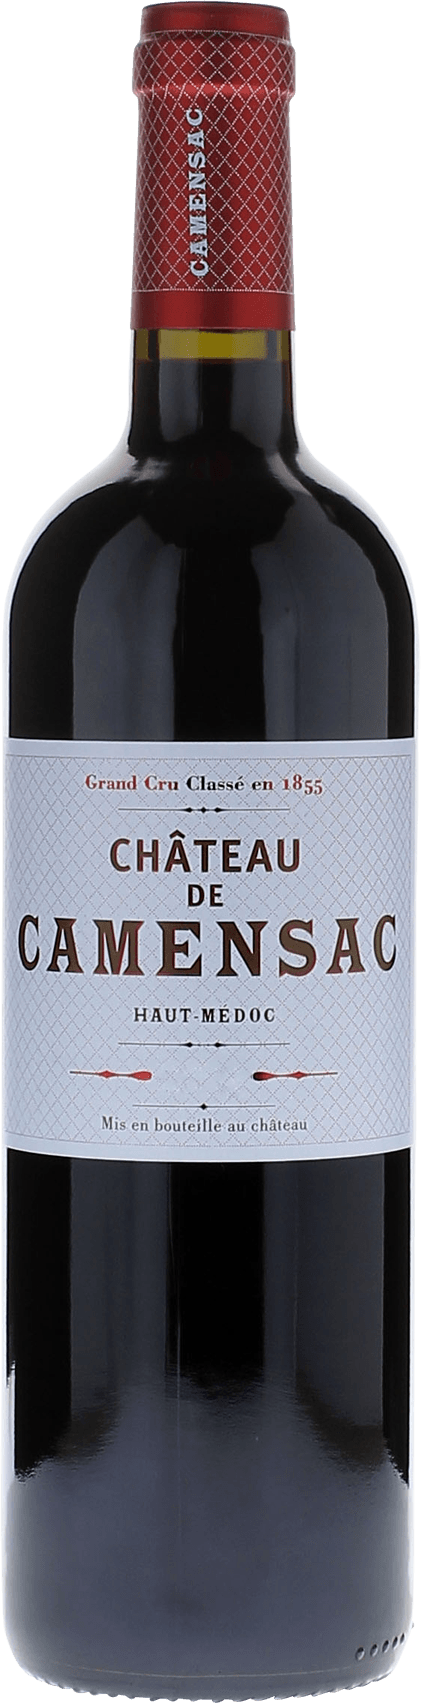 Camensac 1995  Haut-Mdoc, Bordeaux rouge